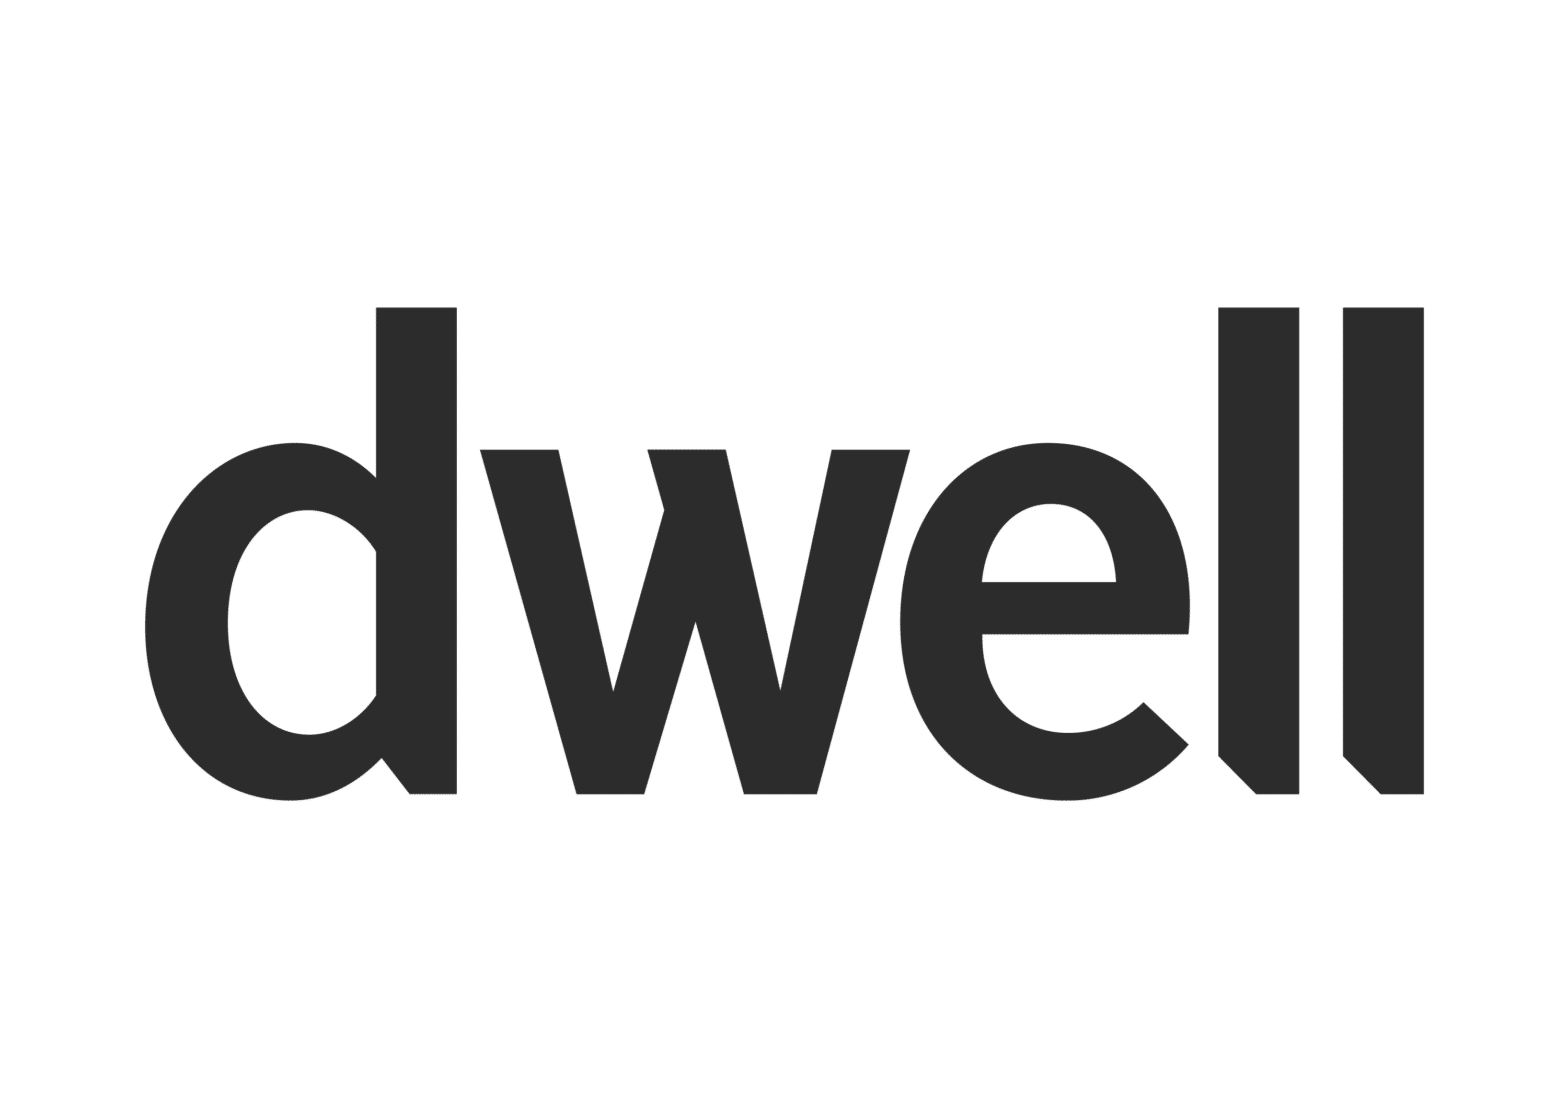 dwell